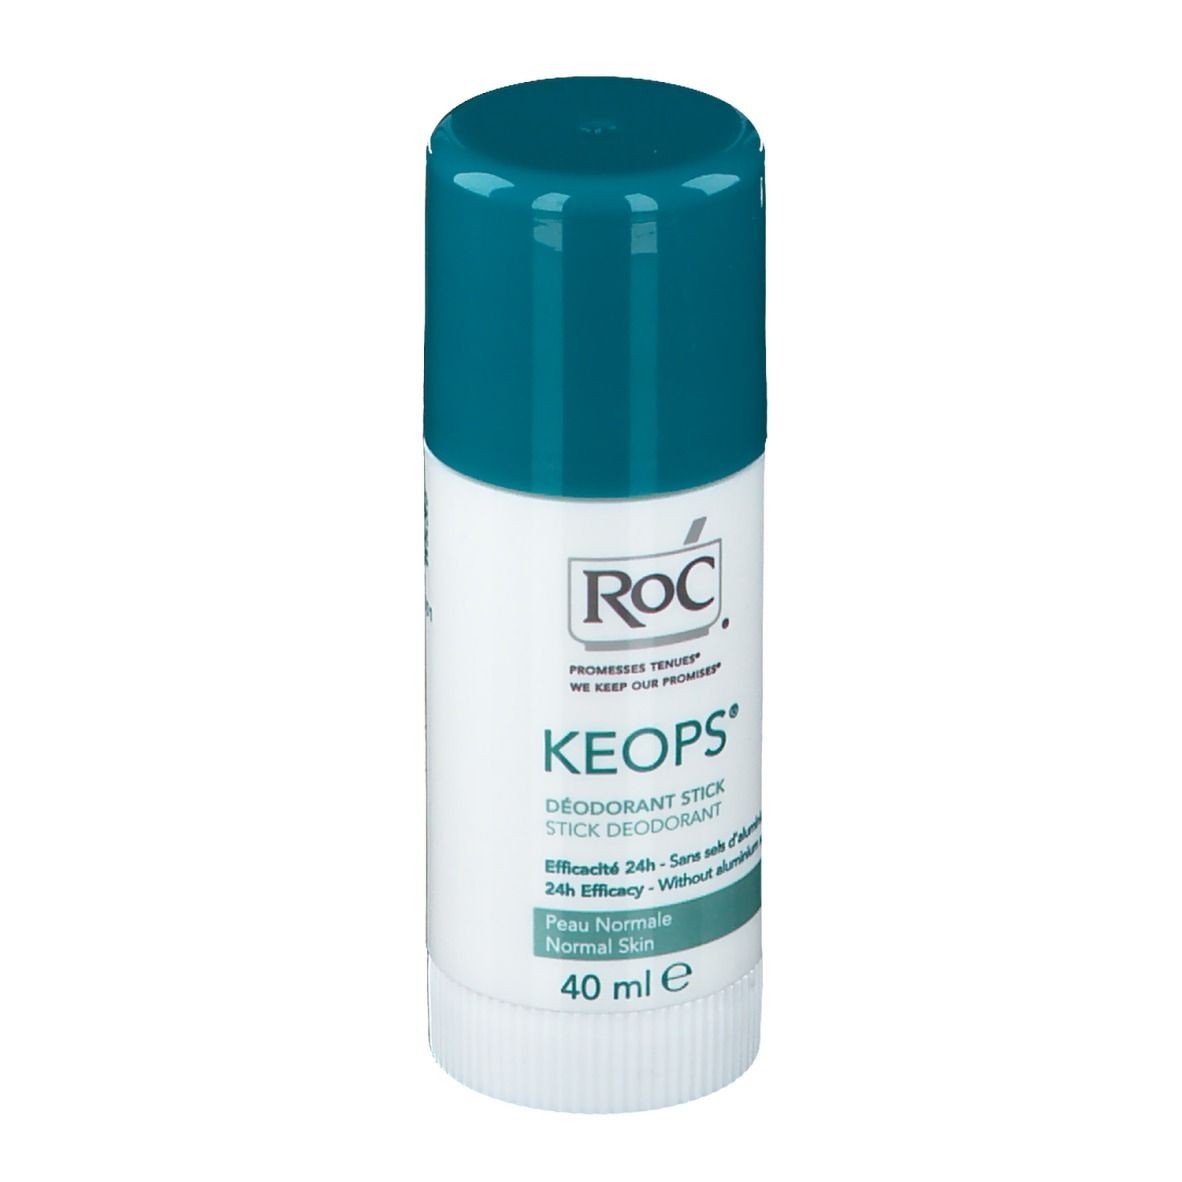 RoC® KEPOS® Deodorante Stick